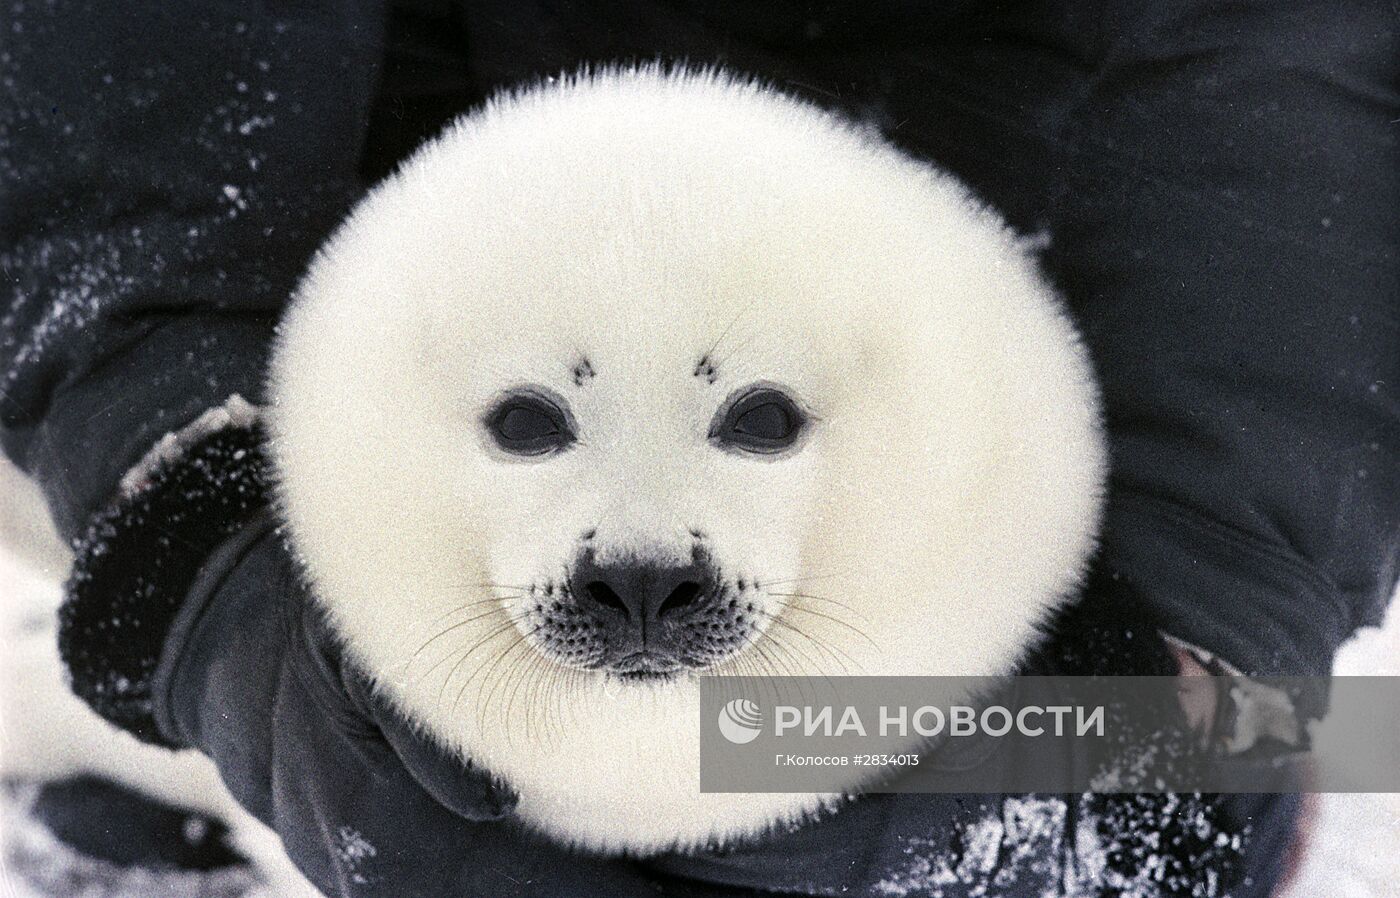 Детеныш гренландского тюленя